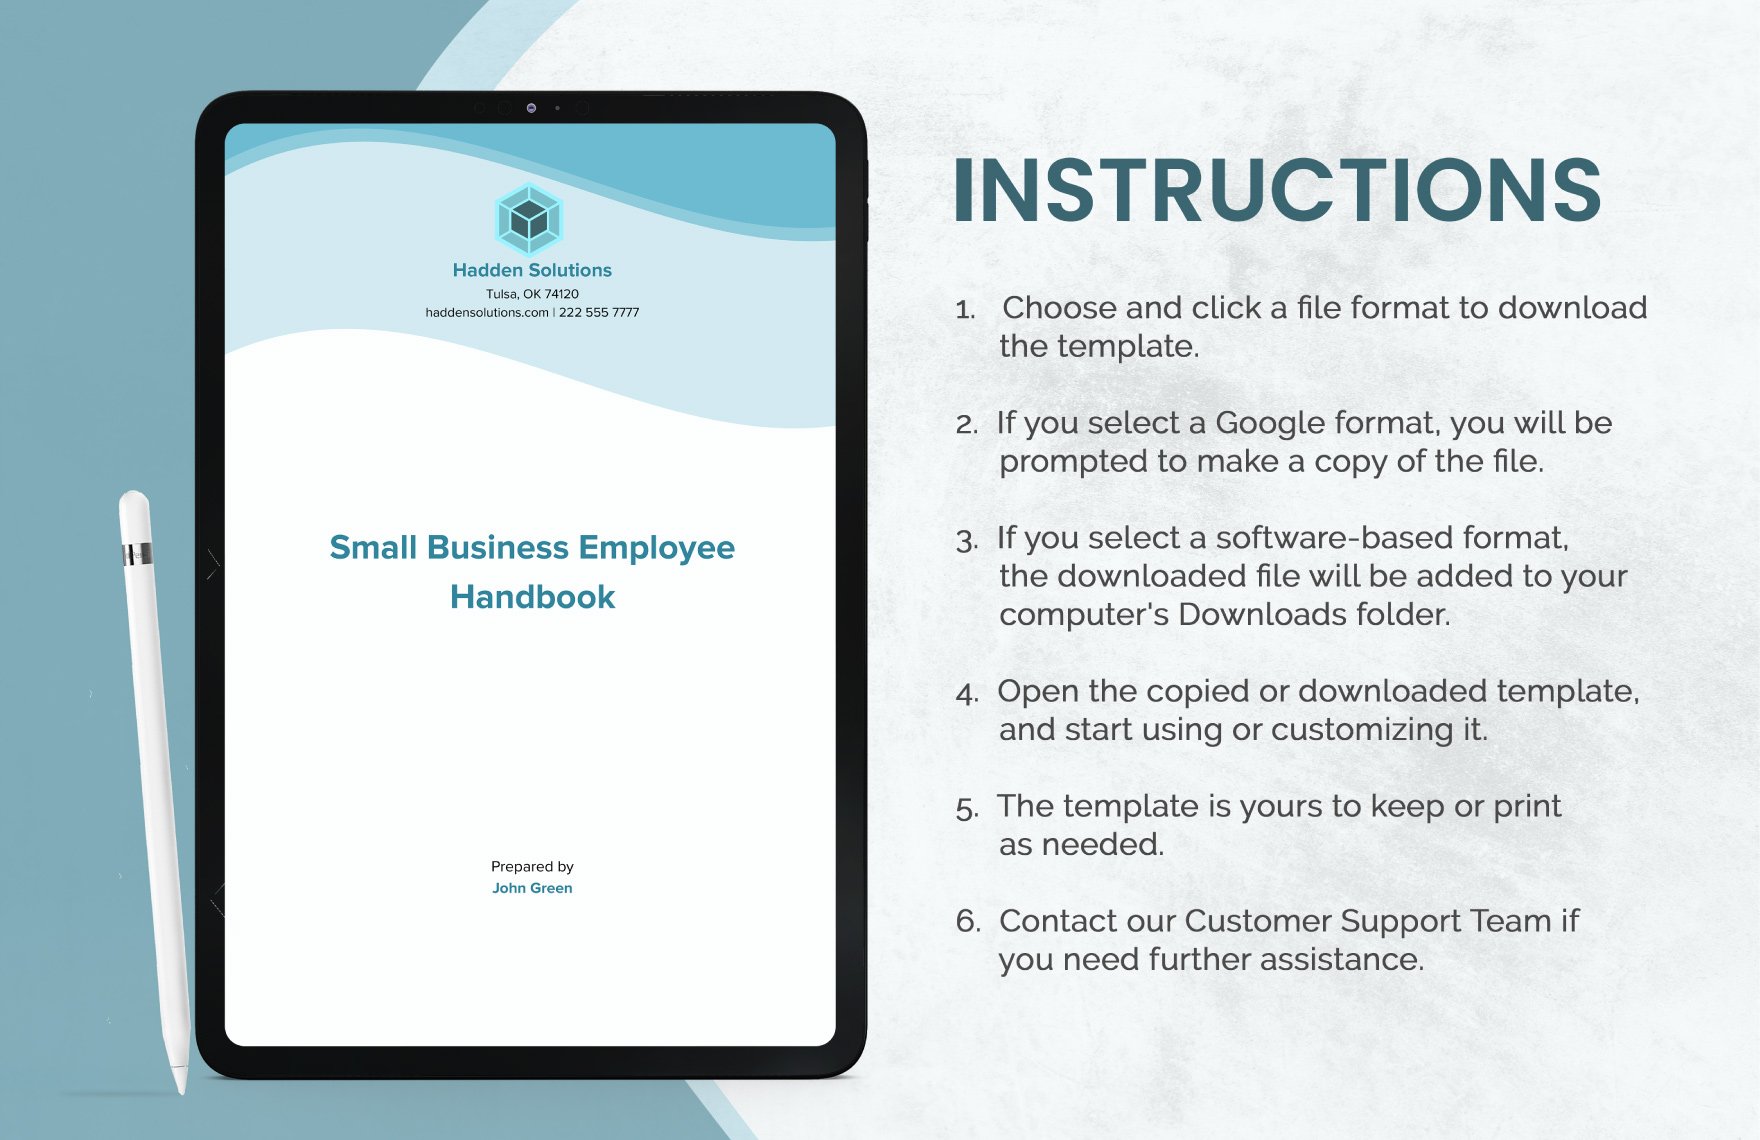 Small Business Employee Handbook Template